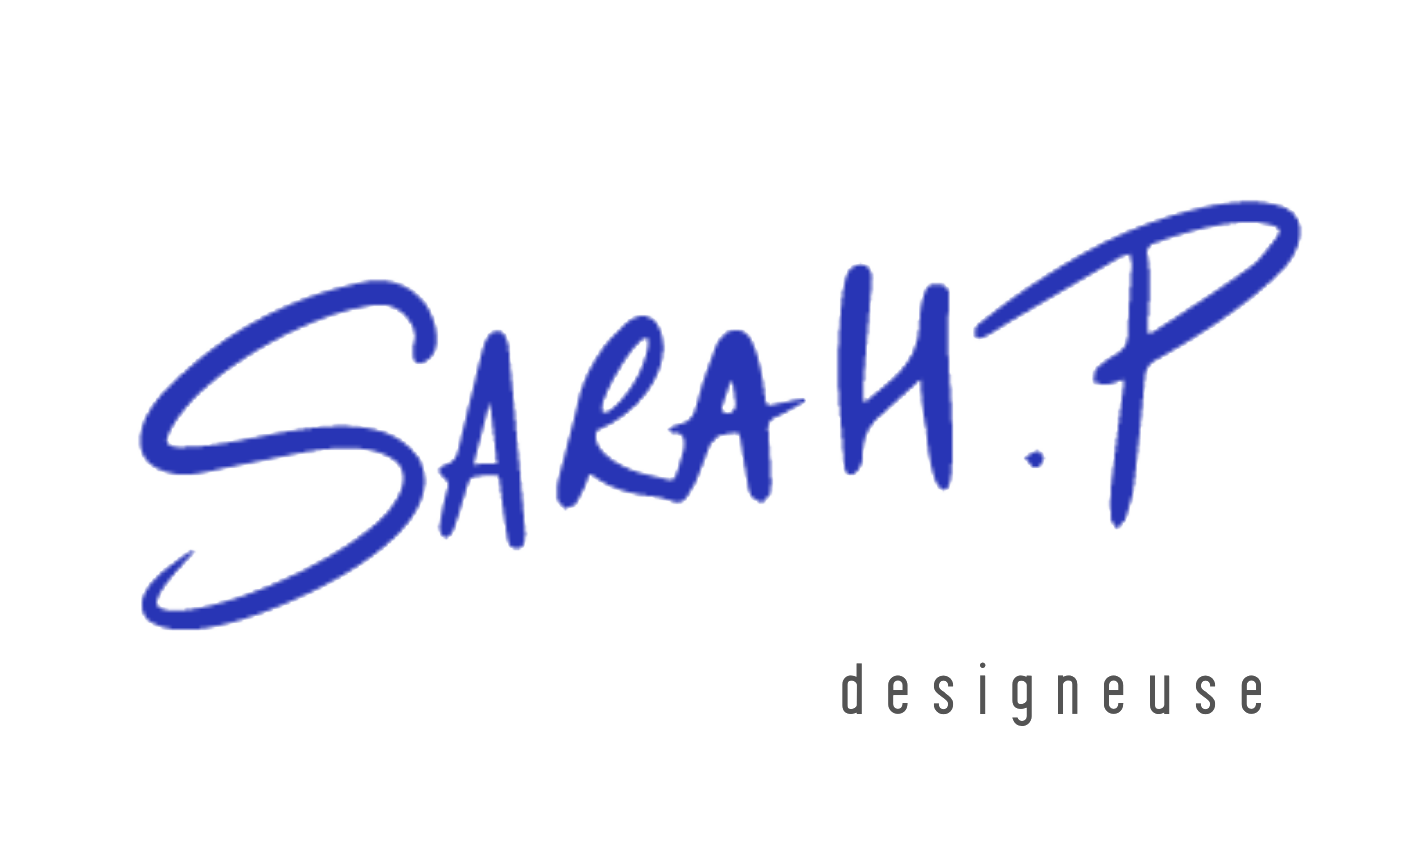 Sarah.P | designeuse